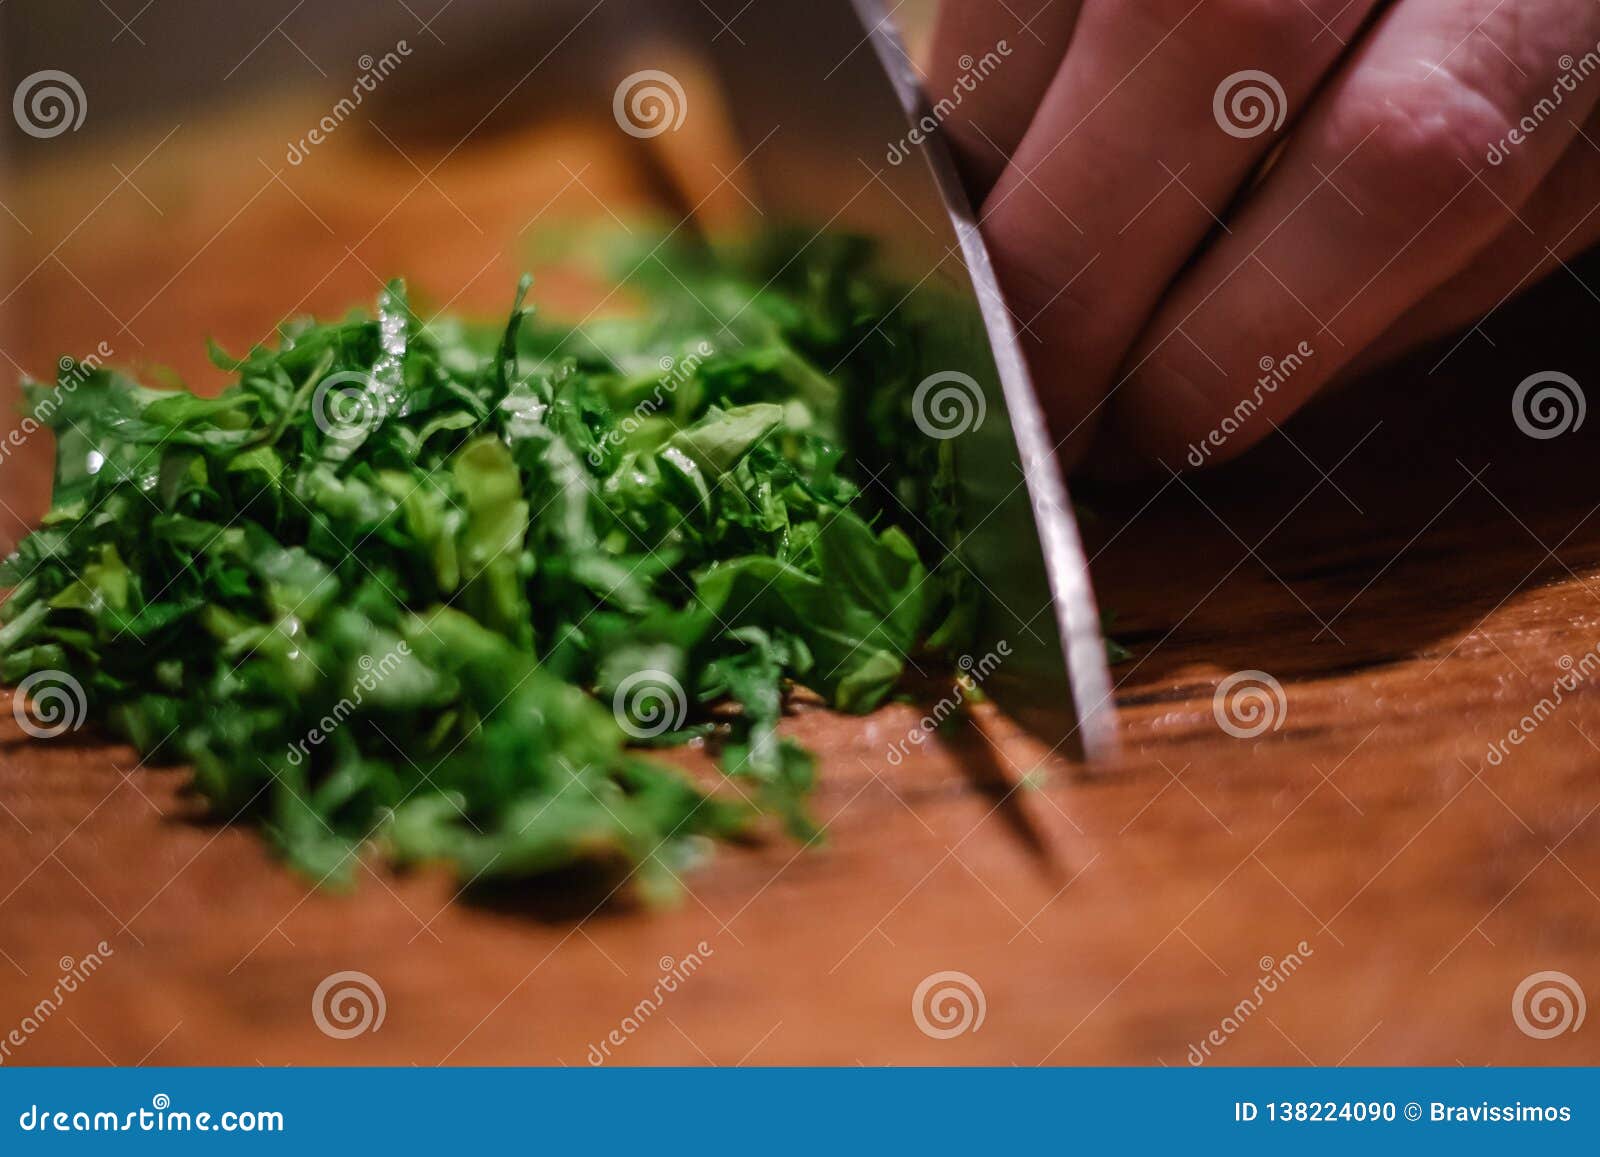 https://thumbs.dreamstime.com/z/parsley-cooking-food-fresh-green-herbal-parsley-cooking-food-fresh-green-vegetable-board-herbal-138224090.jpg